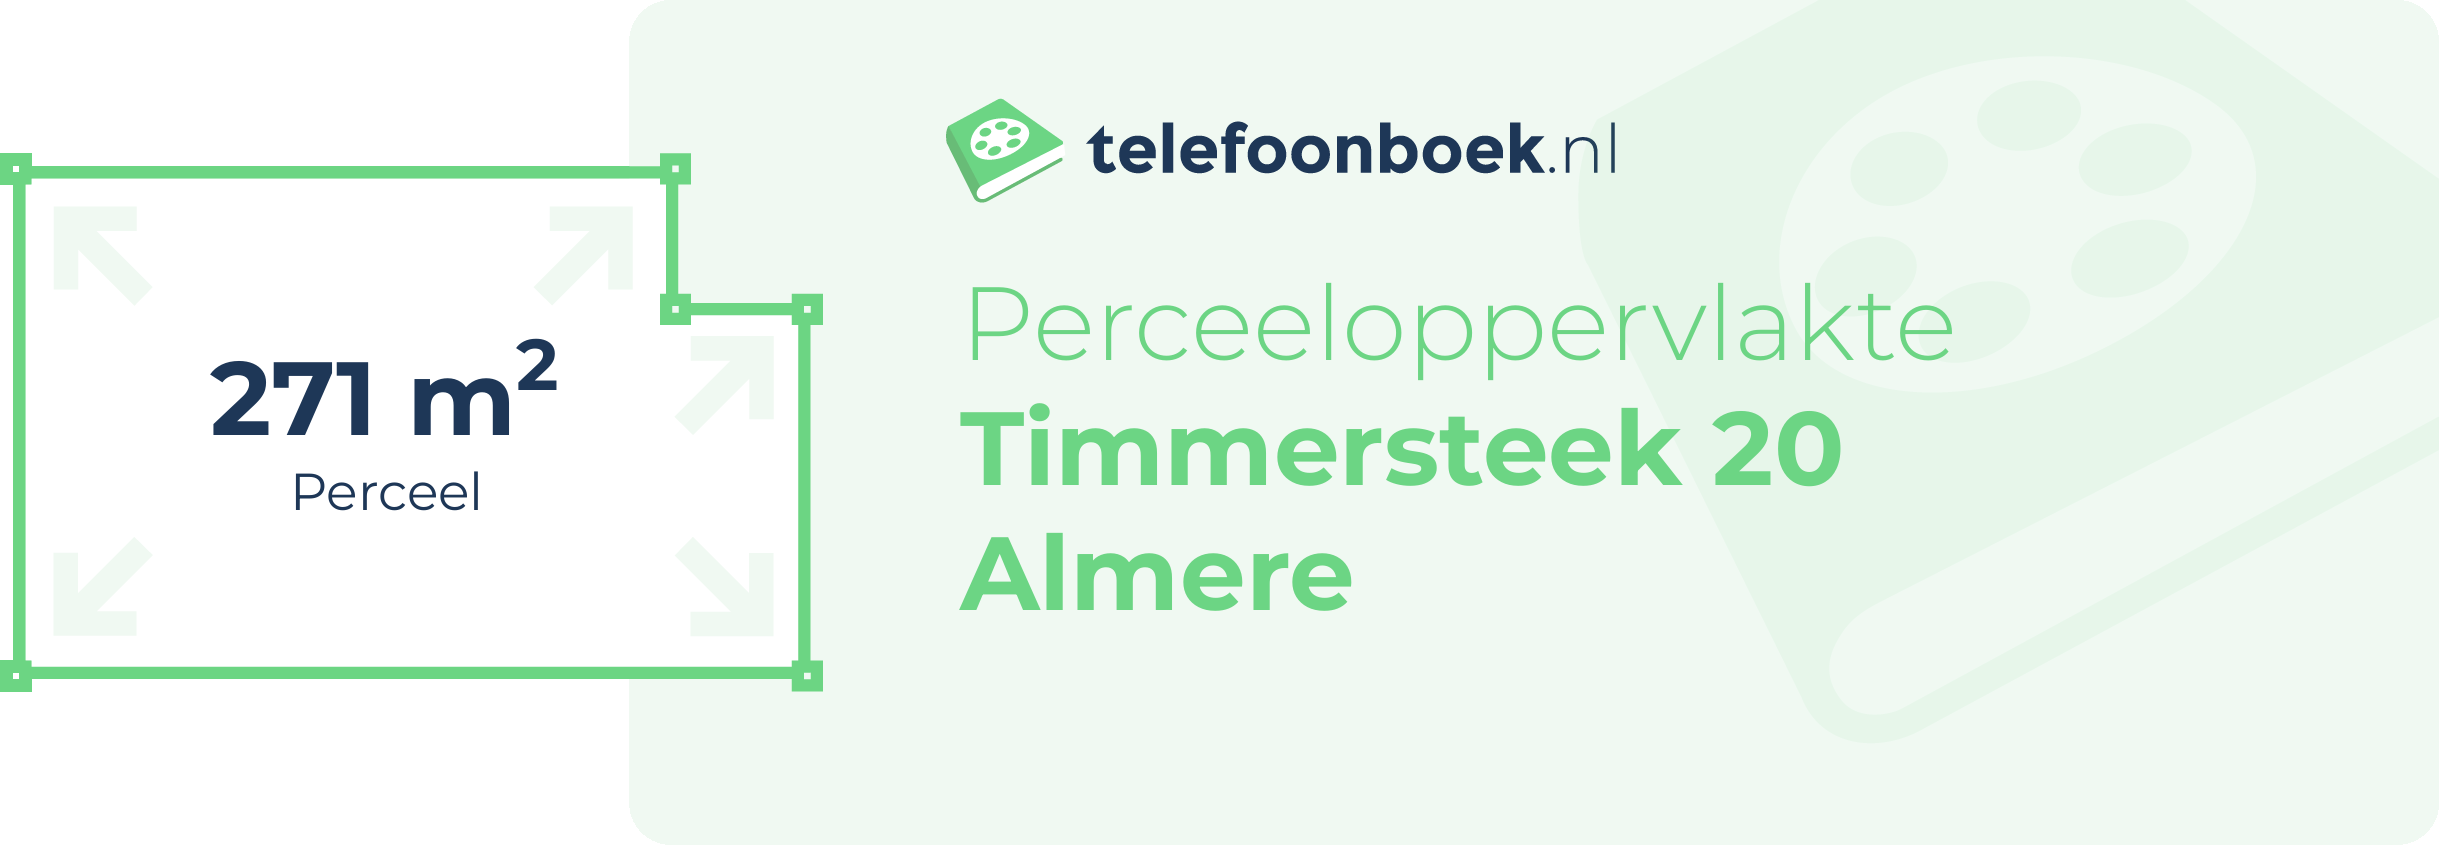 Perceeloppervlakte Timmersteek 20 Almere